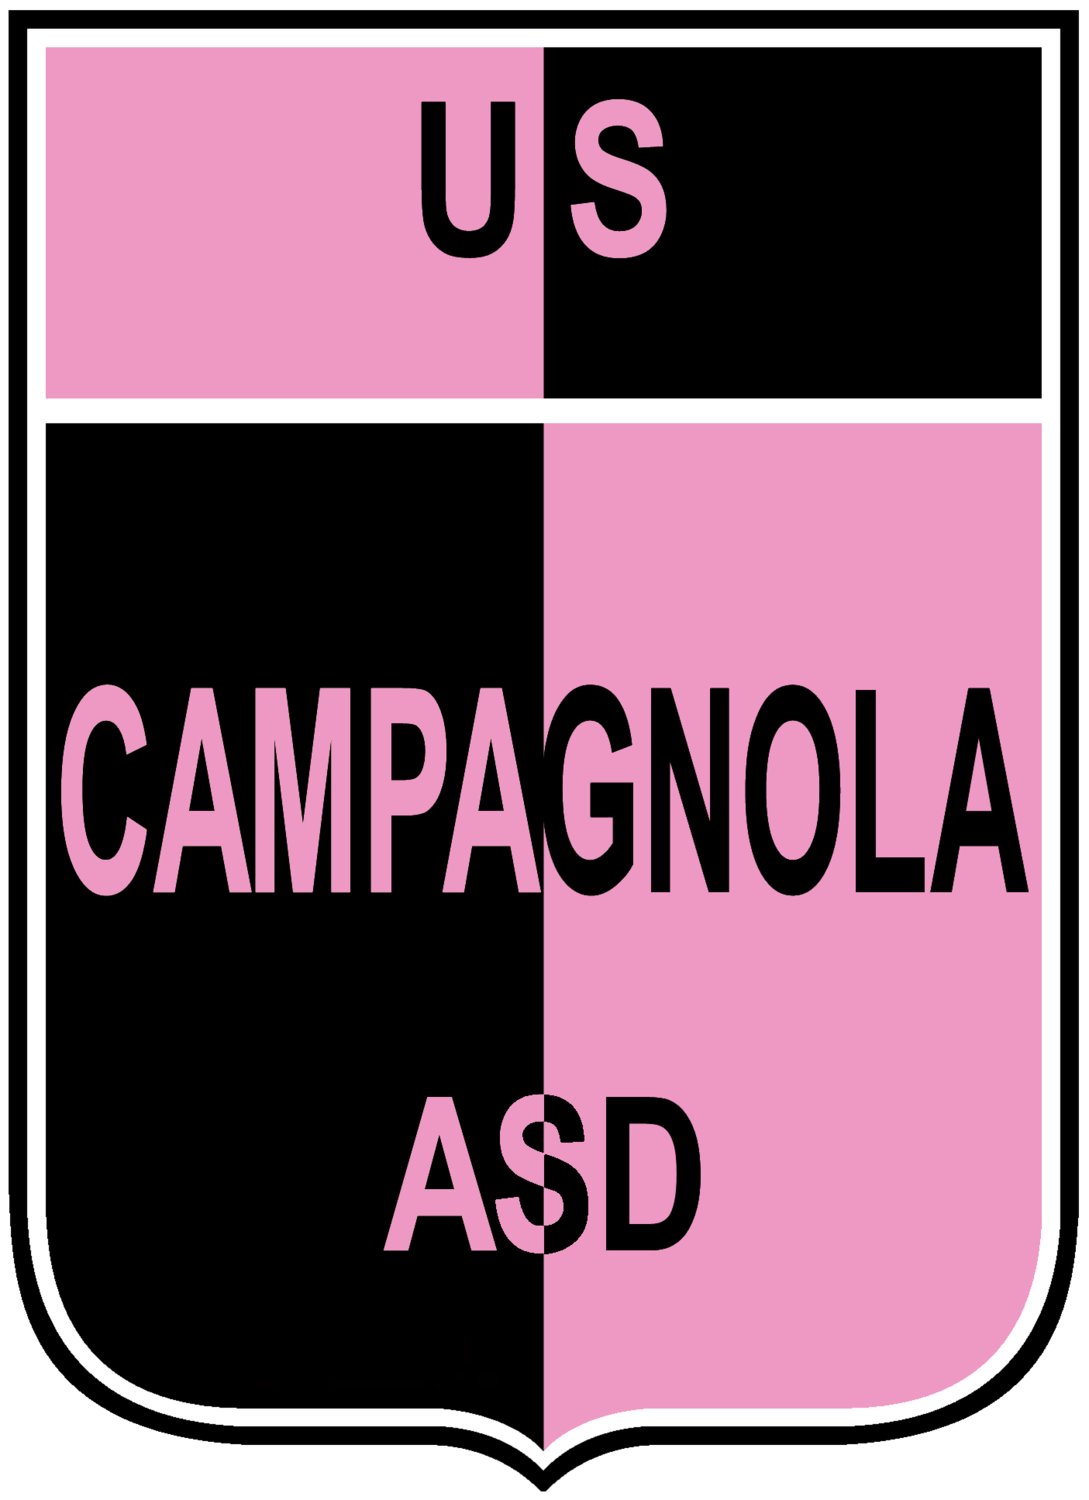 Wappen US Campagnola  80068